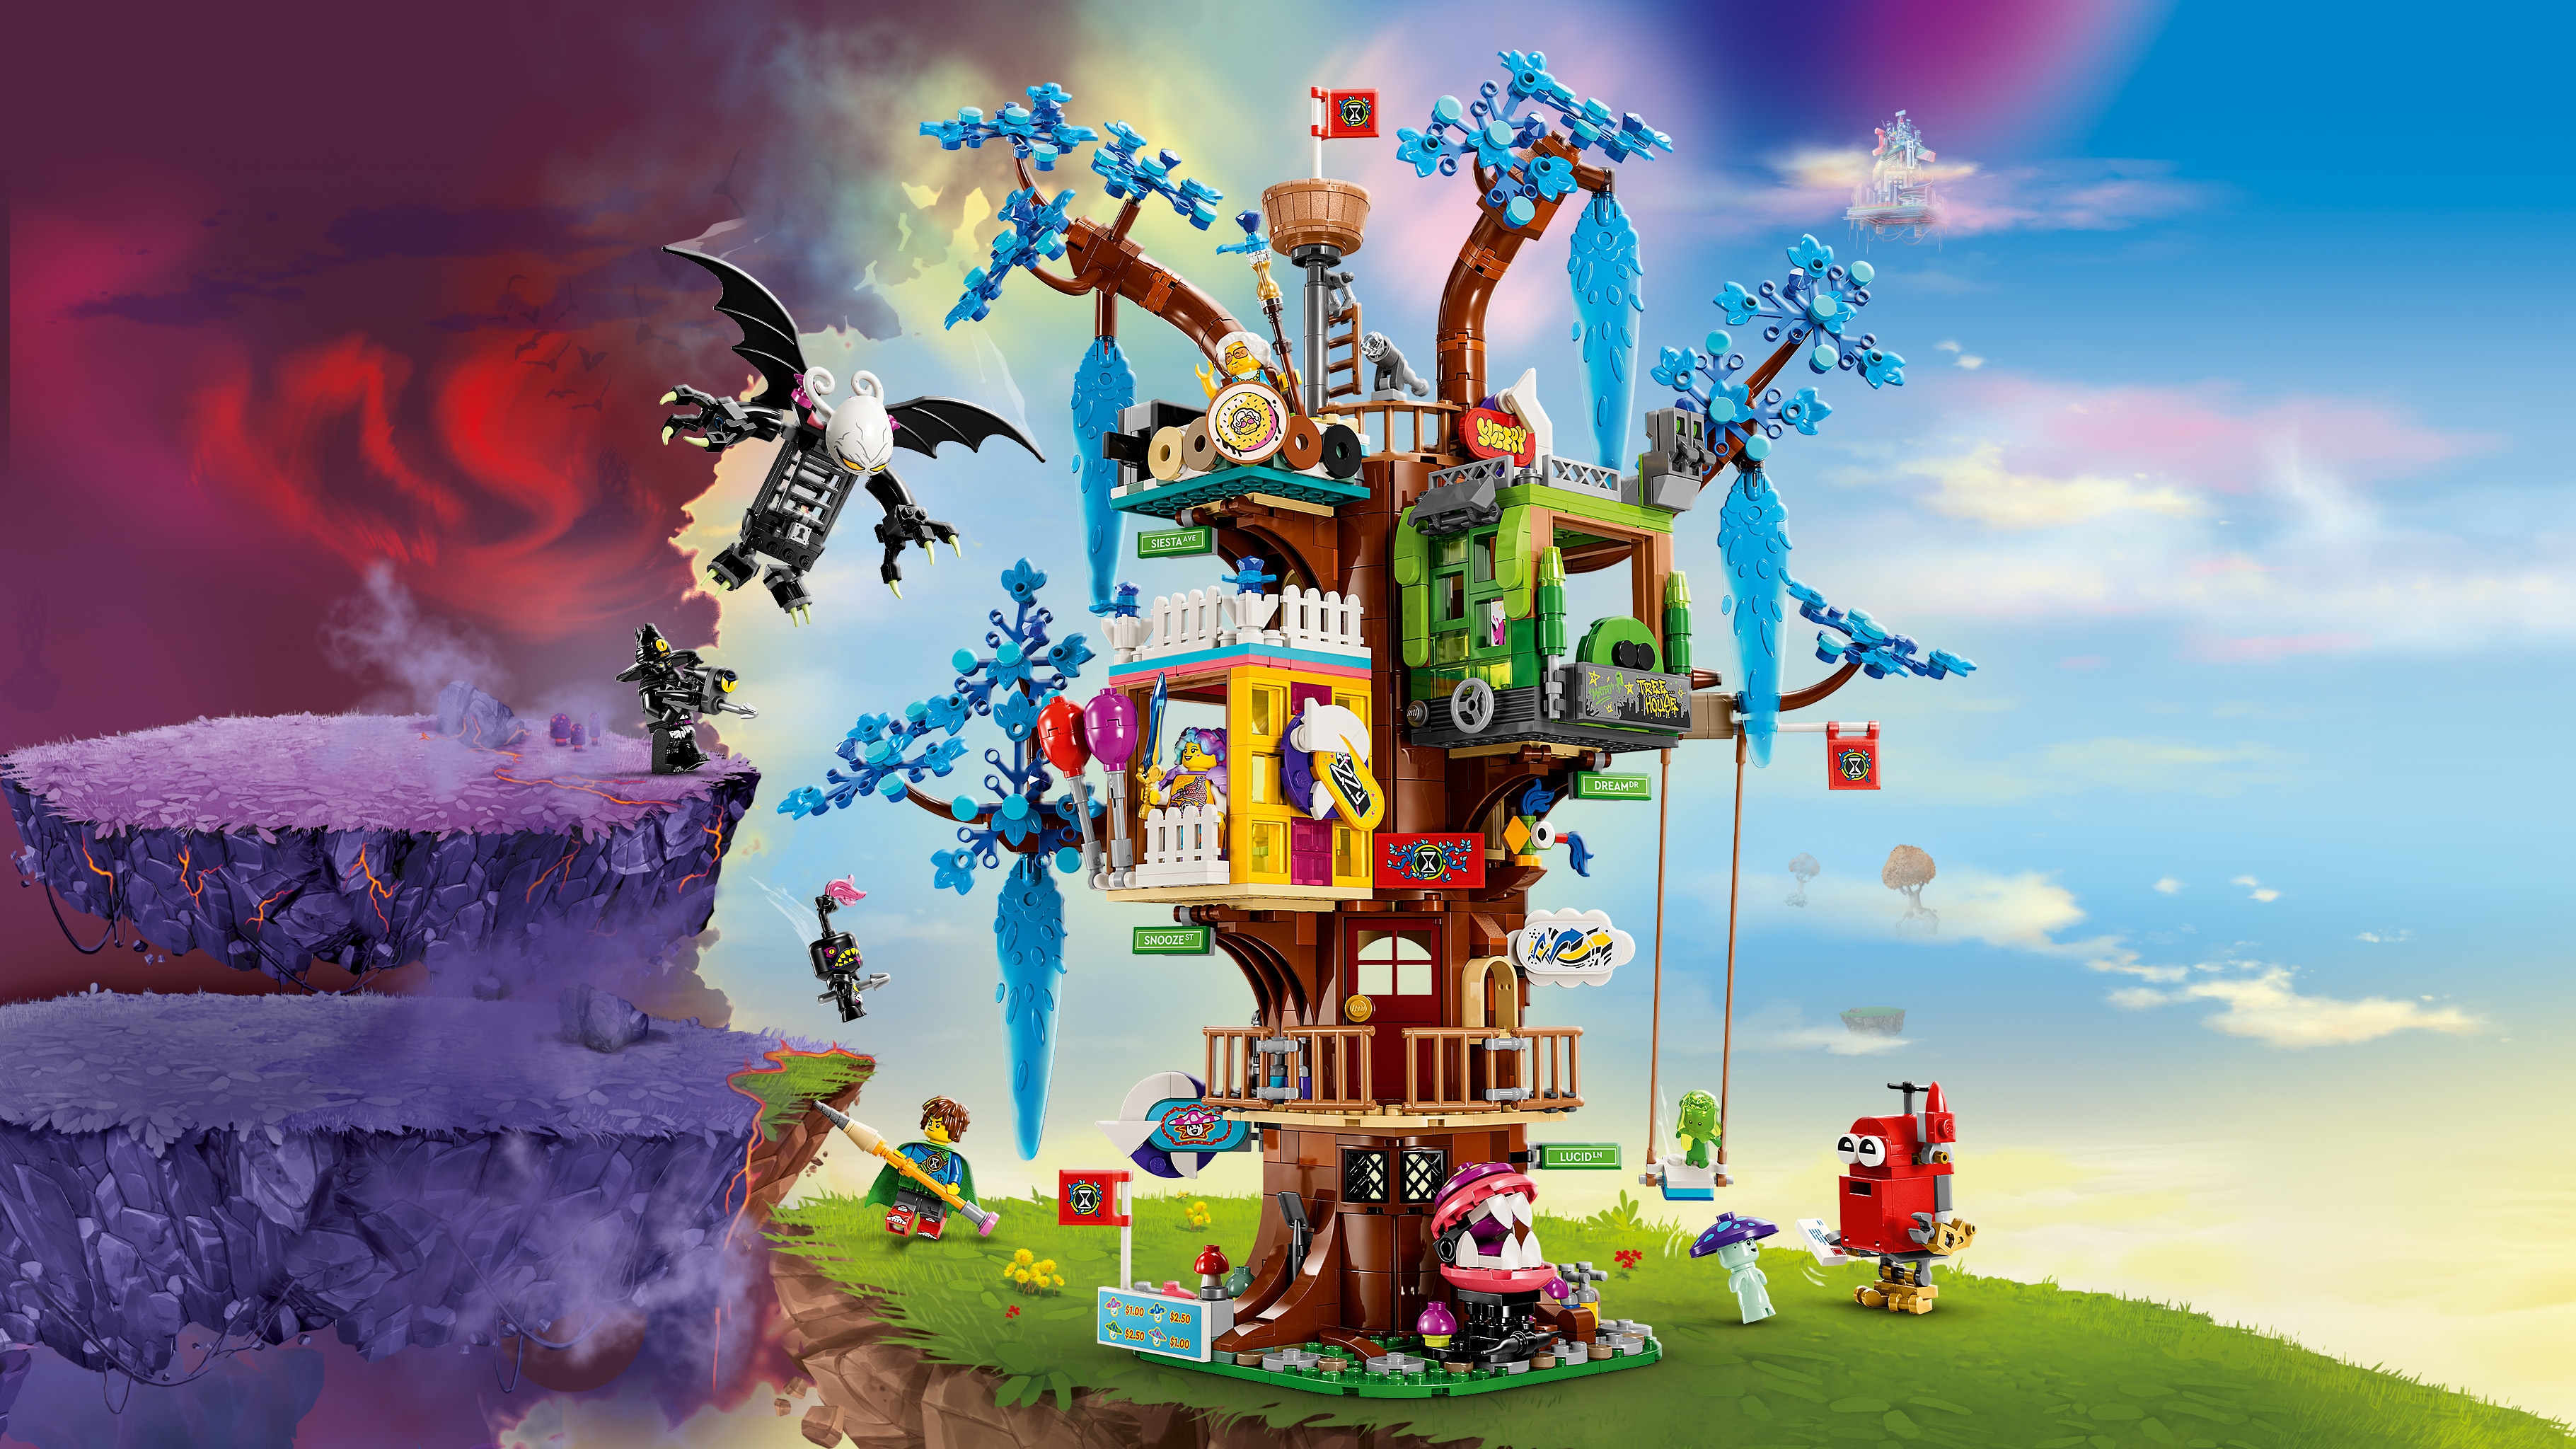 Fantastical Tree House - Videos - LEGO.com for kids